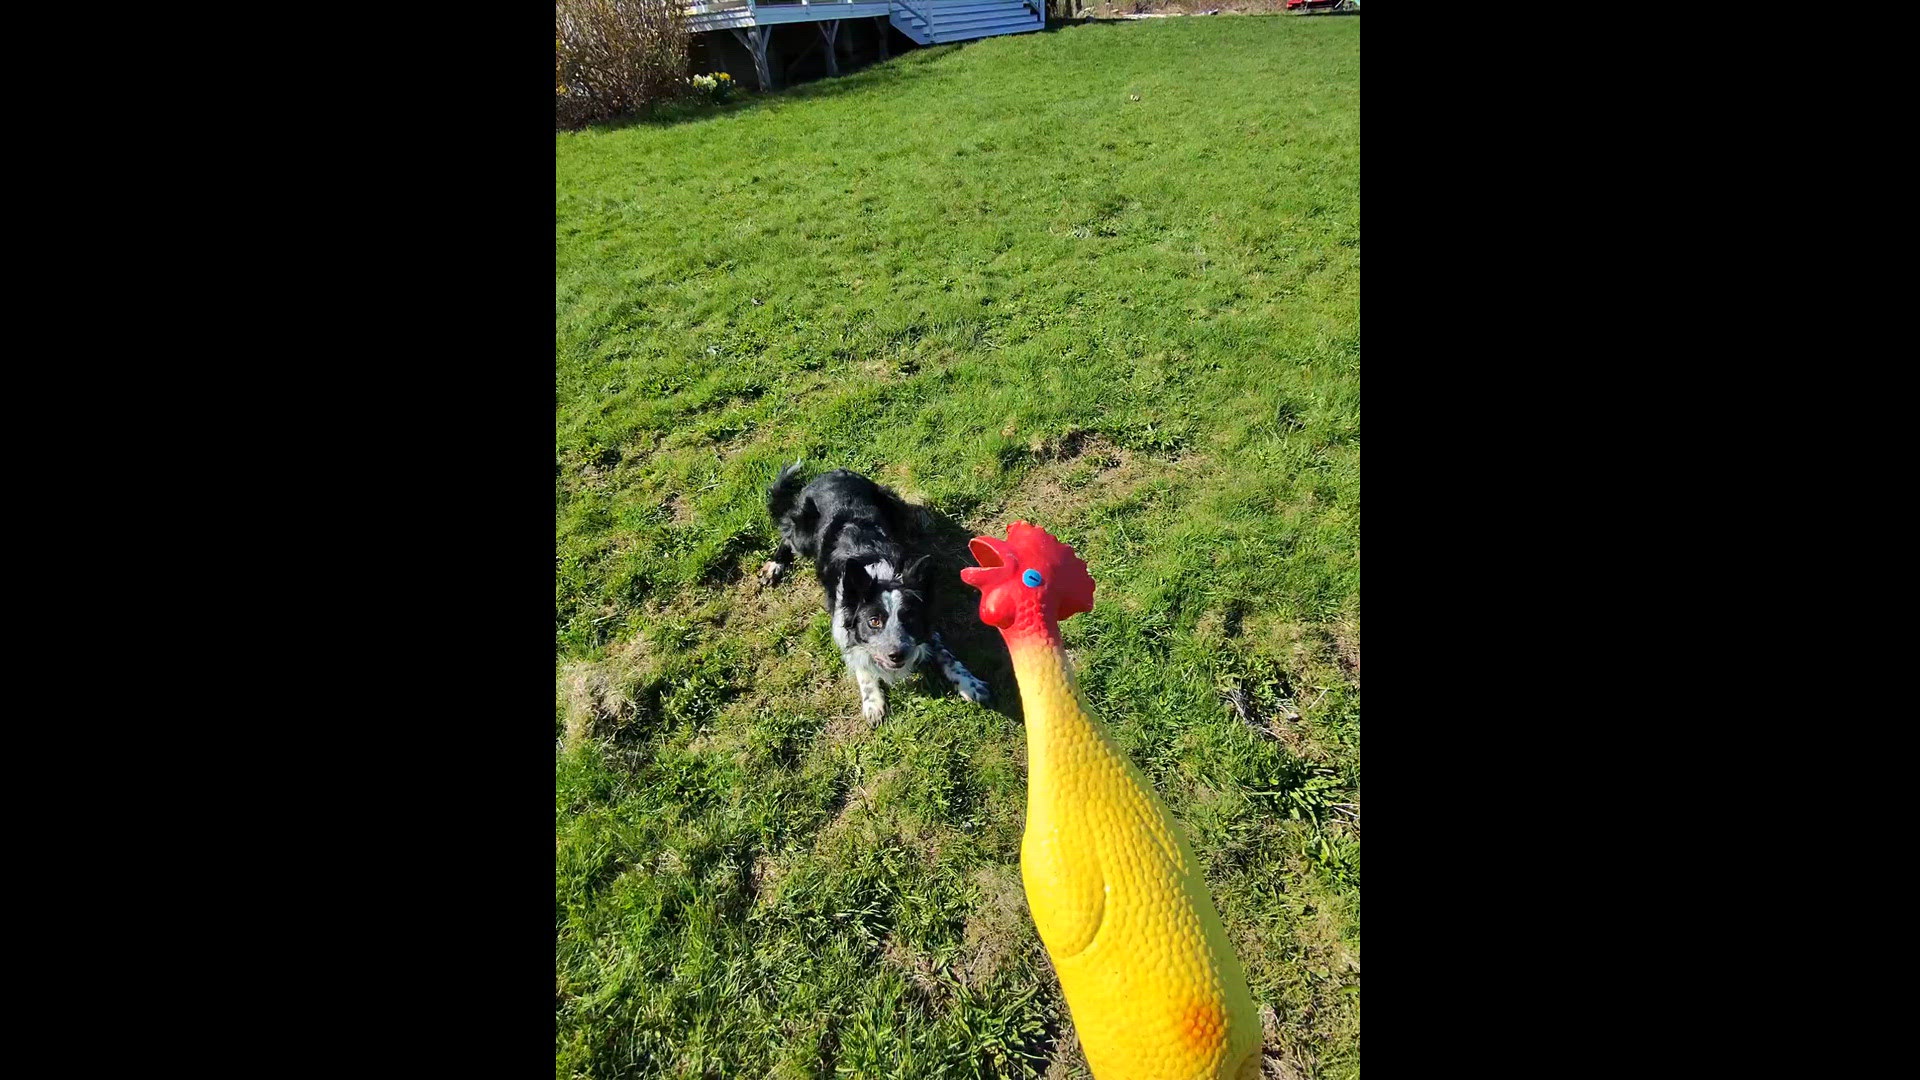 Next, the Border Collie, prefers Rotisserie Chicken Chuckin'
Credit: Lisa Lane